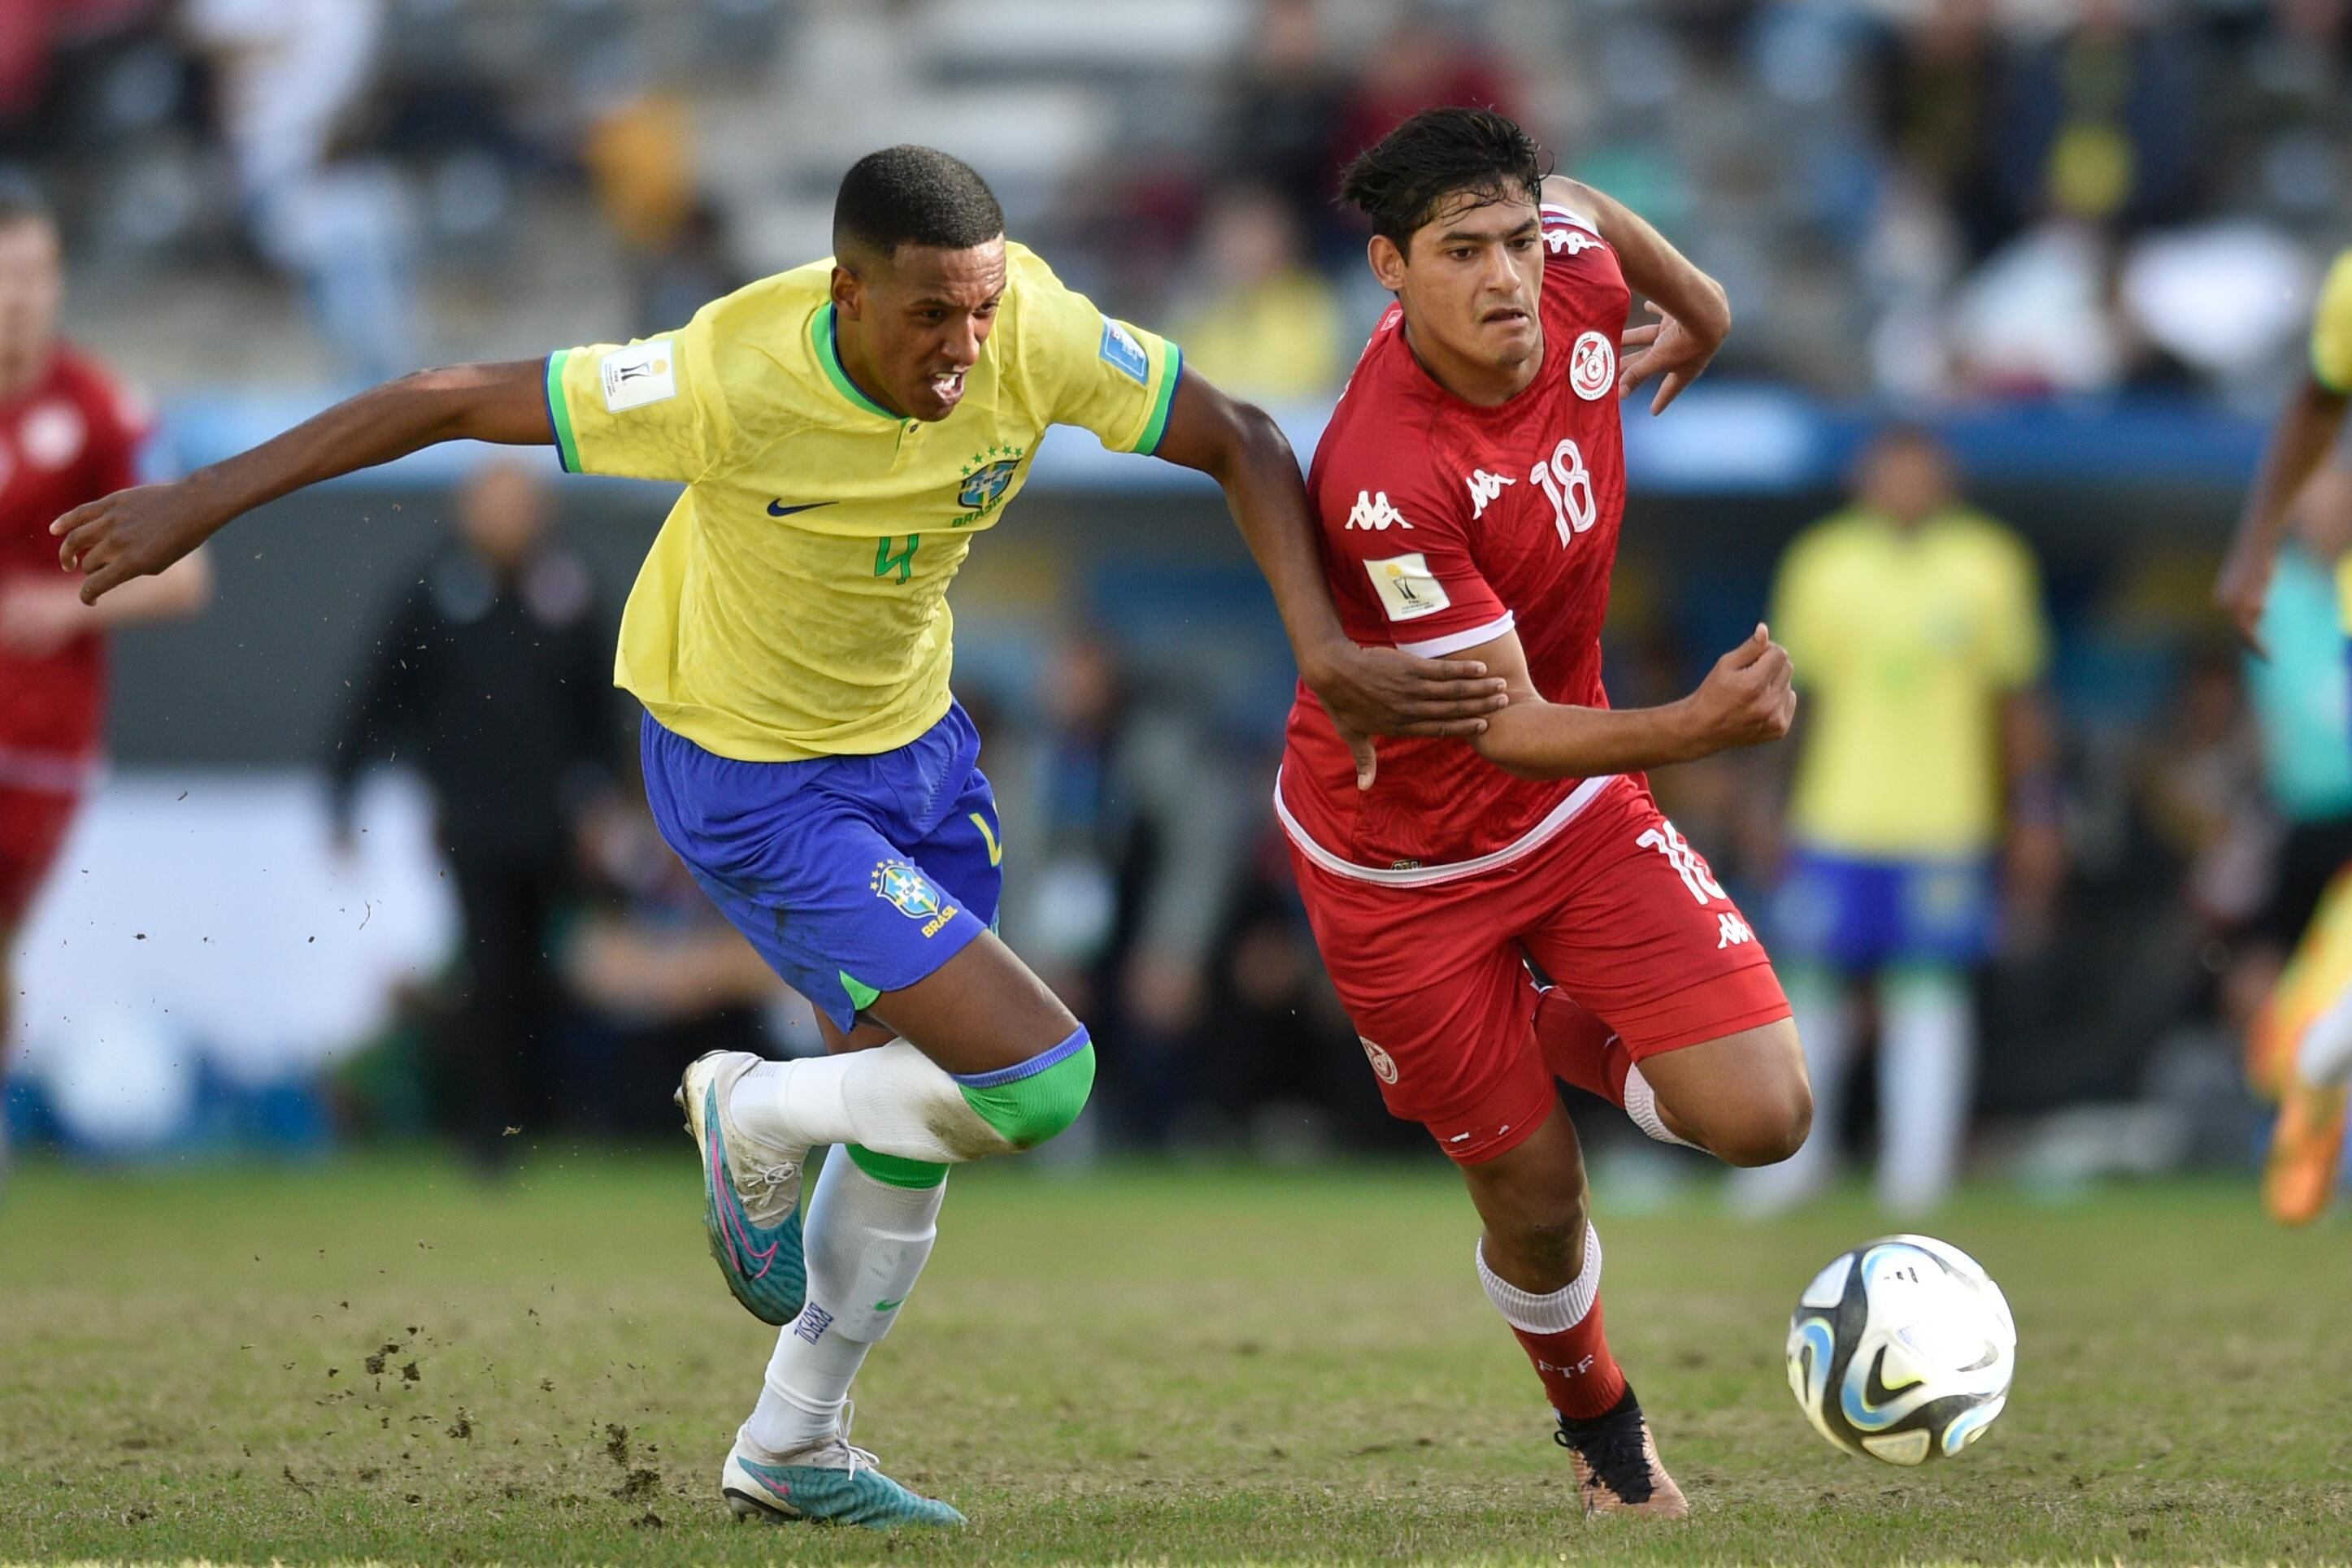 Robert Renan expõe ofensas racistas e ameaça de morte após jogo do Brasil  no Mundial sub-20